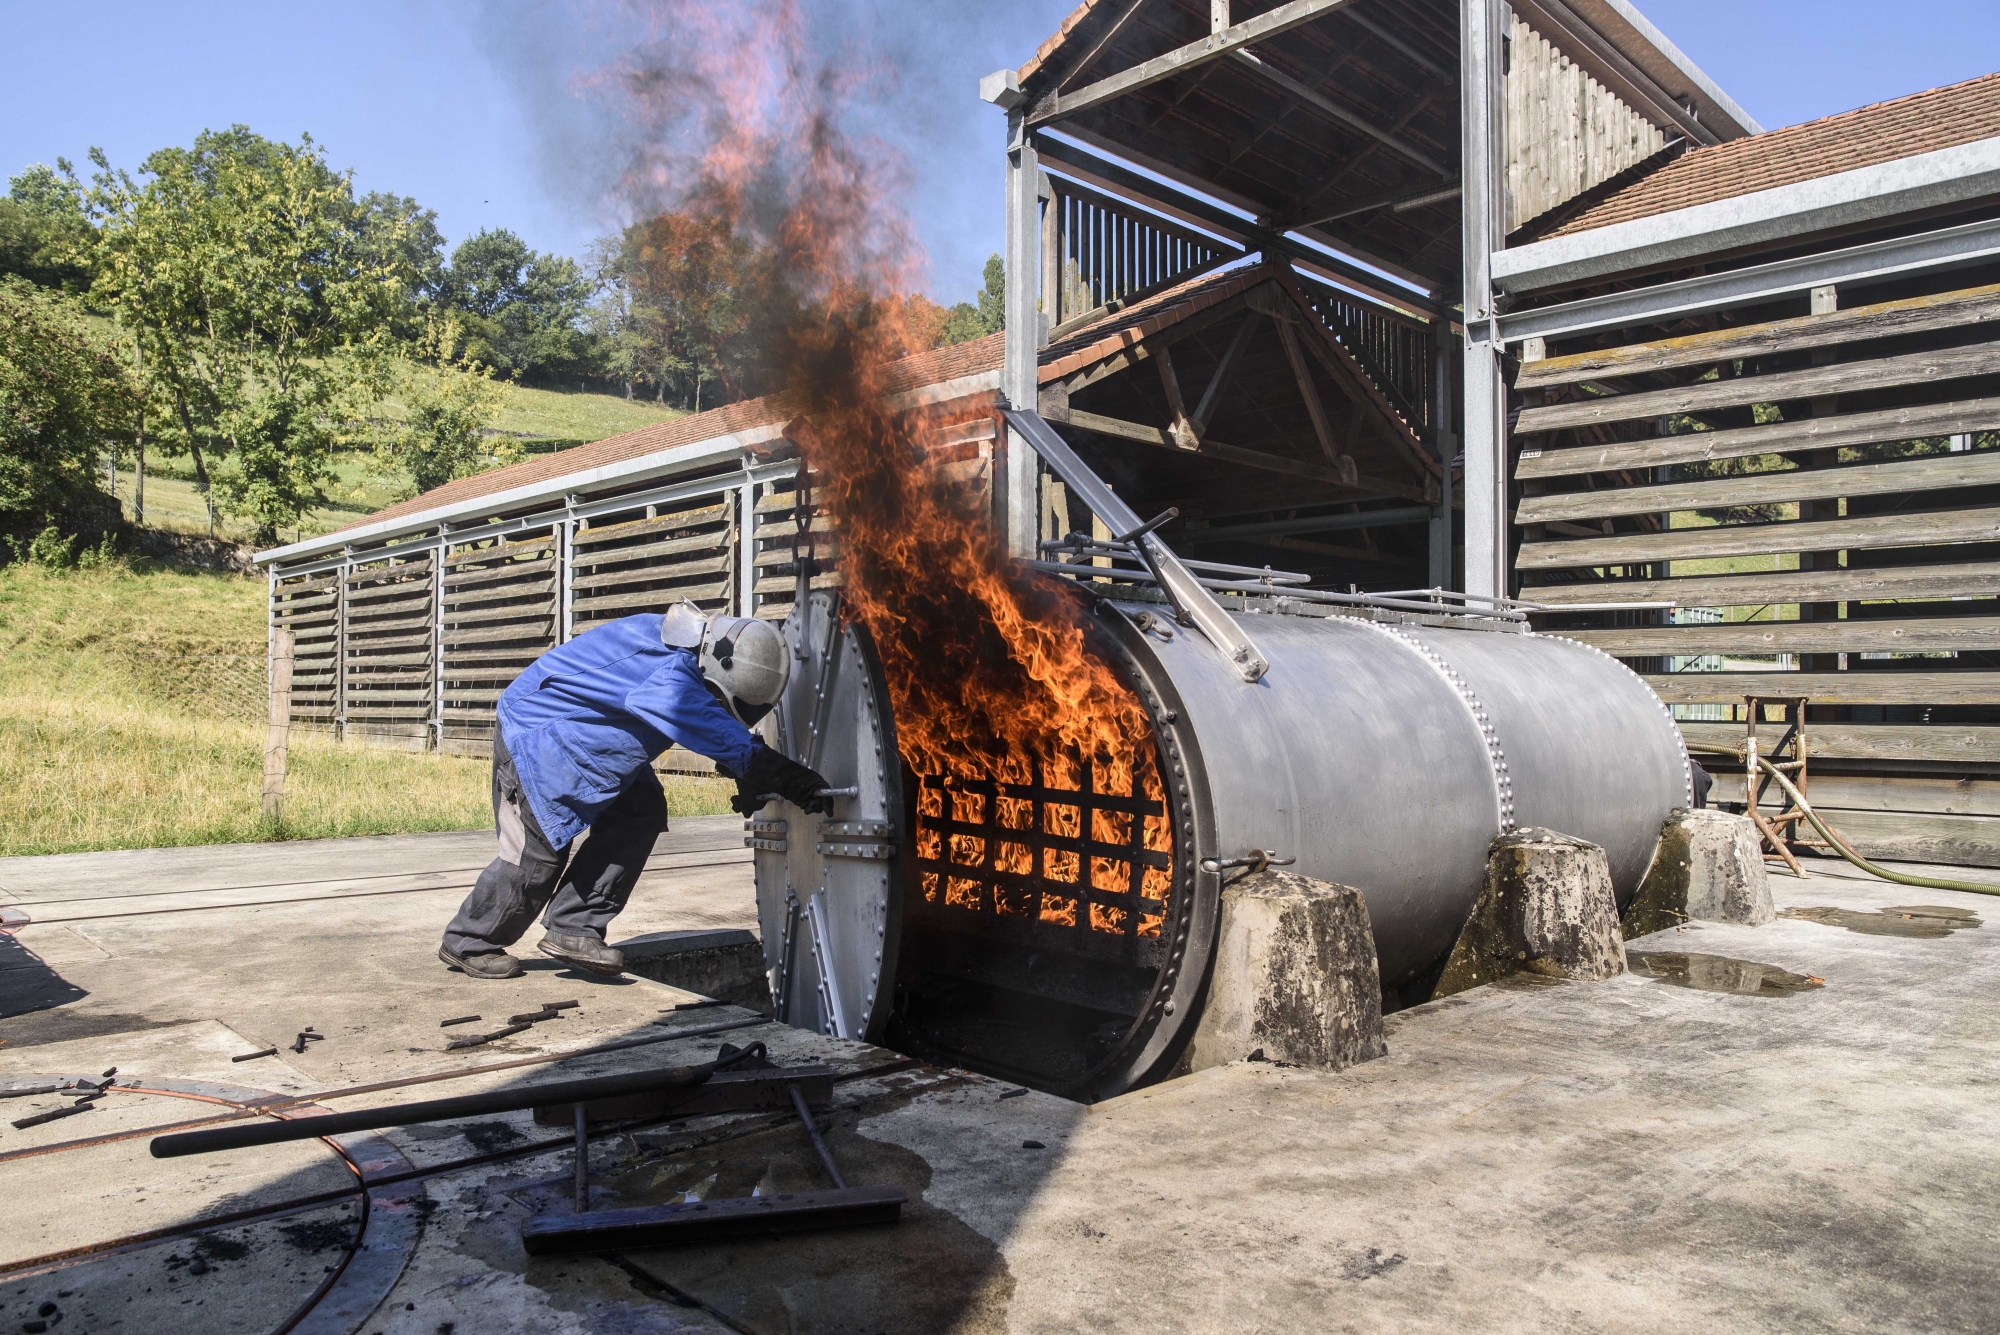 Le charbon de bois, ingrédient de la poudre, est fabriqué sur place. Le bois est carbonisé durant sept heures à 290 degrés environ.